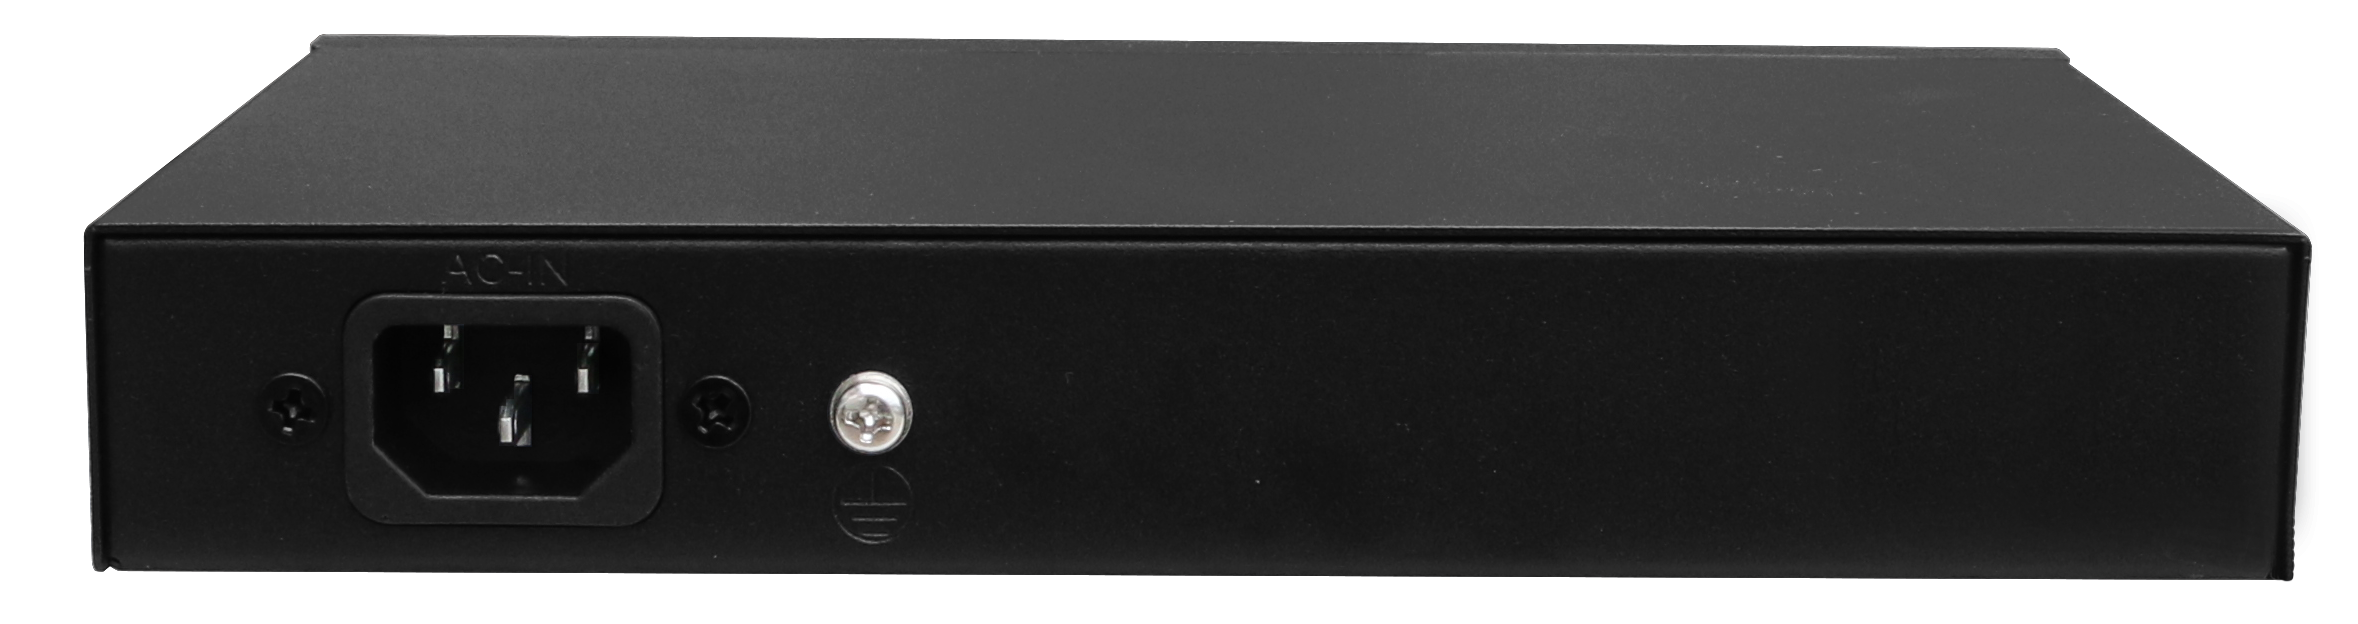 WI-PS308G-V2 | 10 Port GbE PoE Switch - 120W